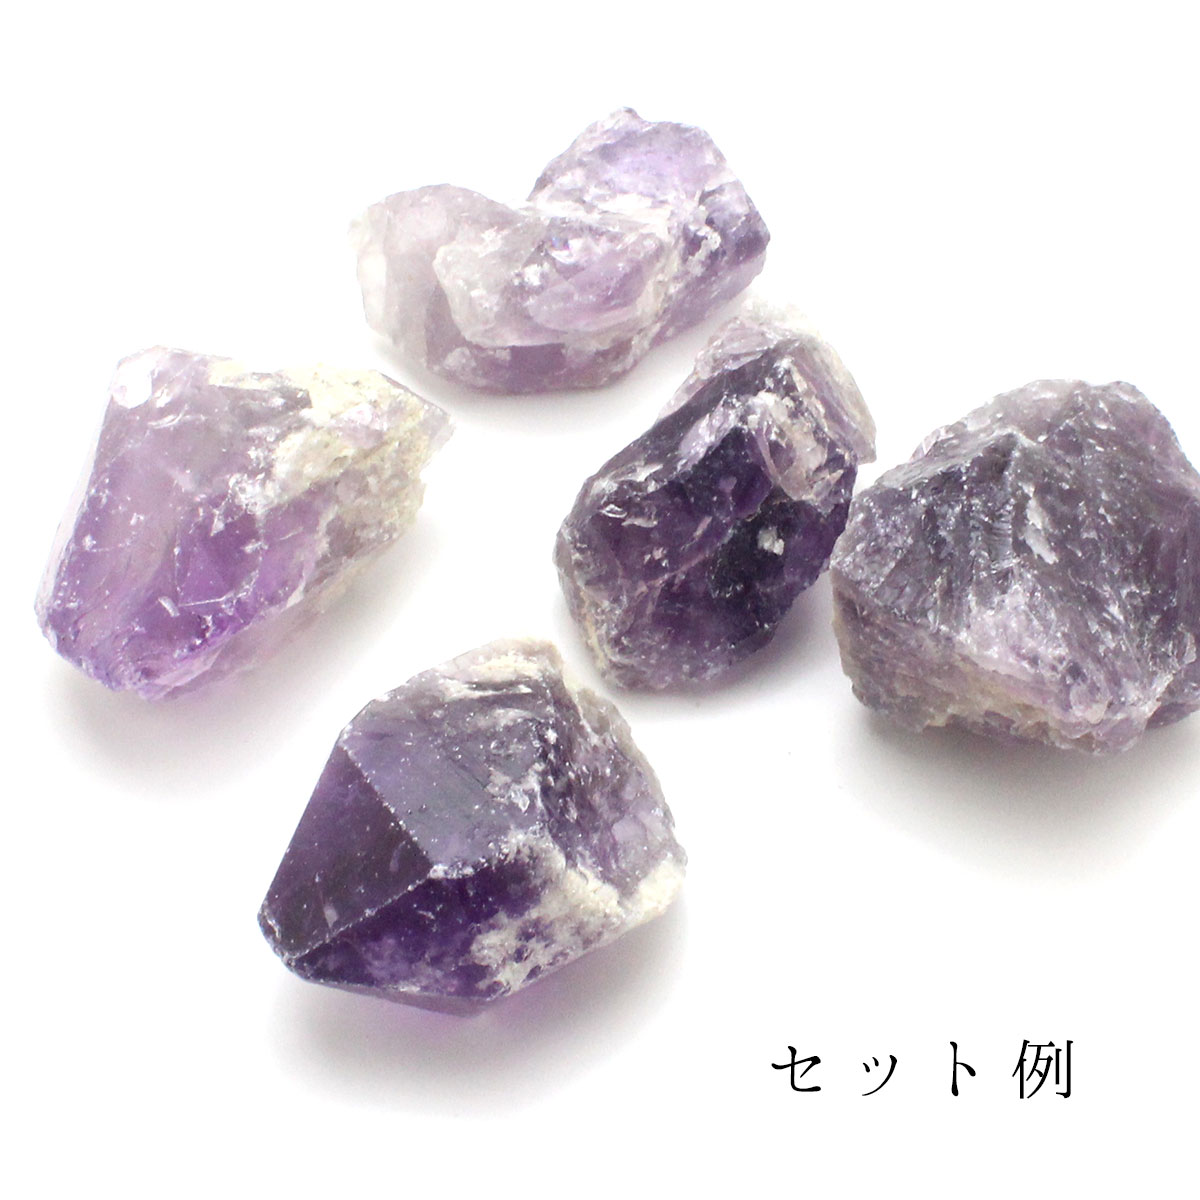 送料無料♪かちわり天然アメジスト 紫水晶 5個セット 約250-350g